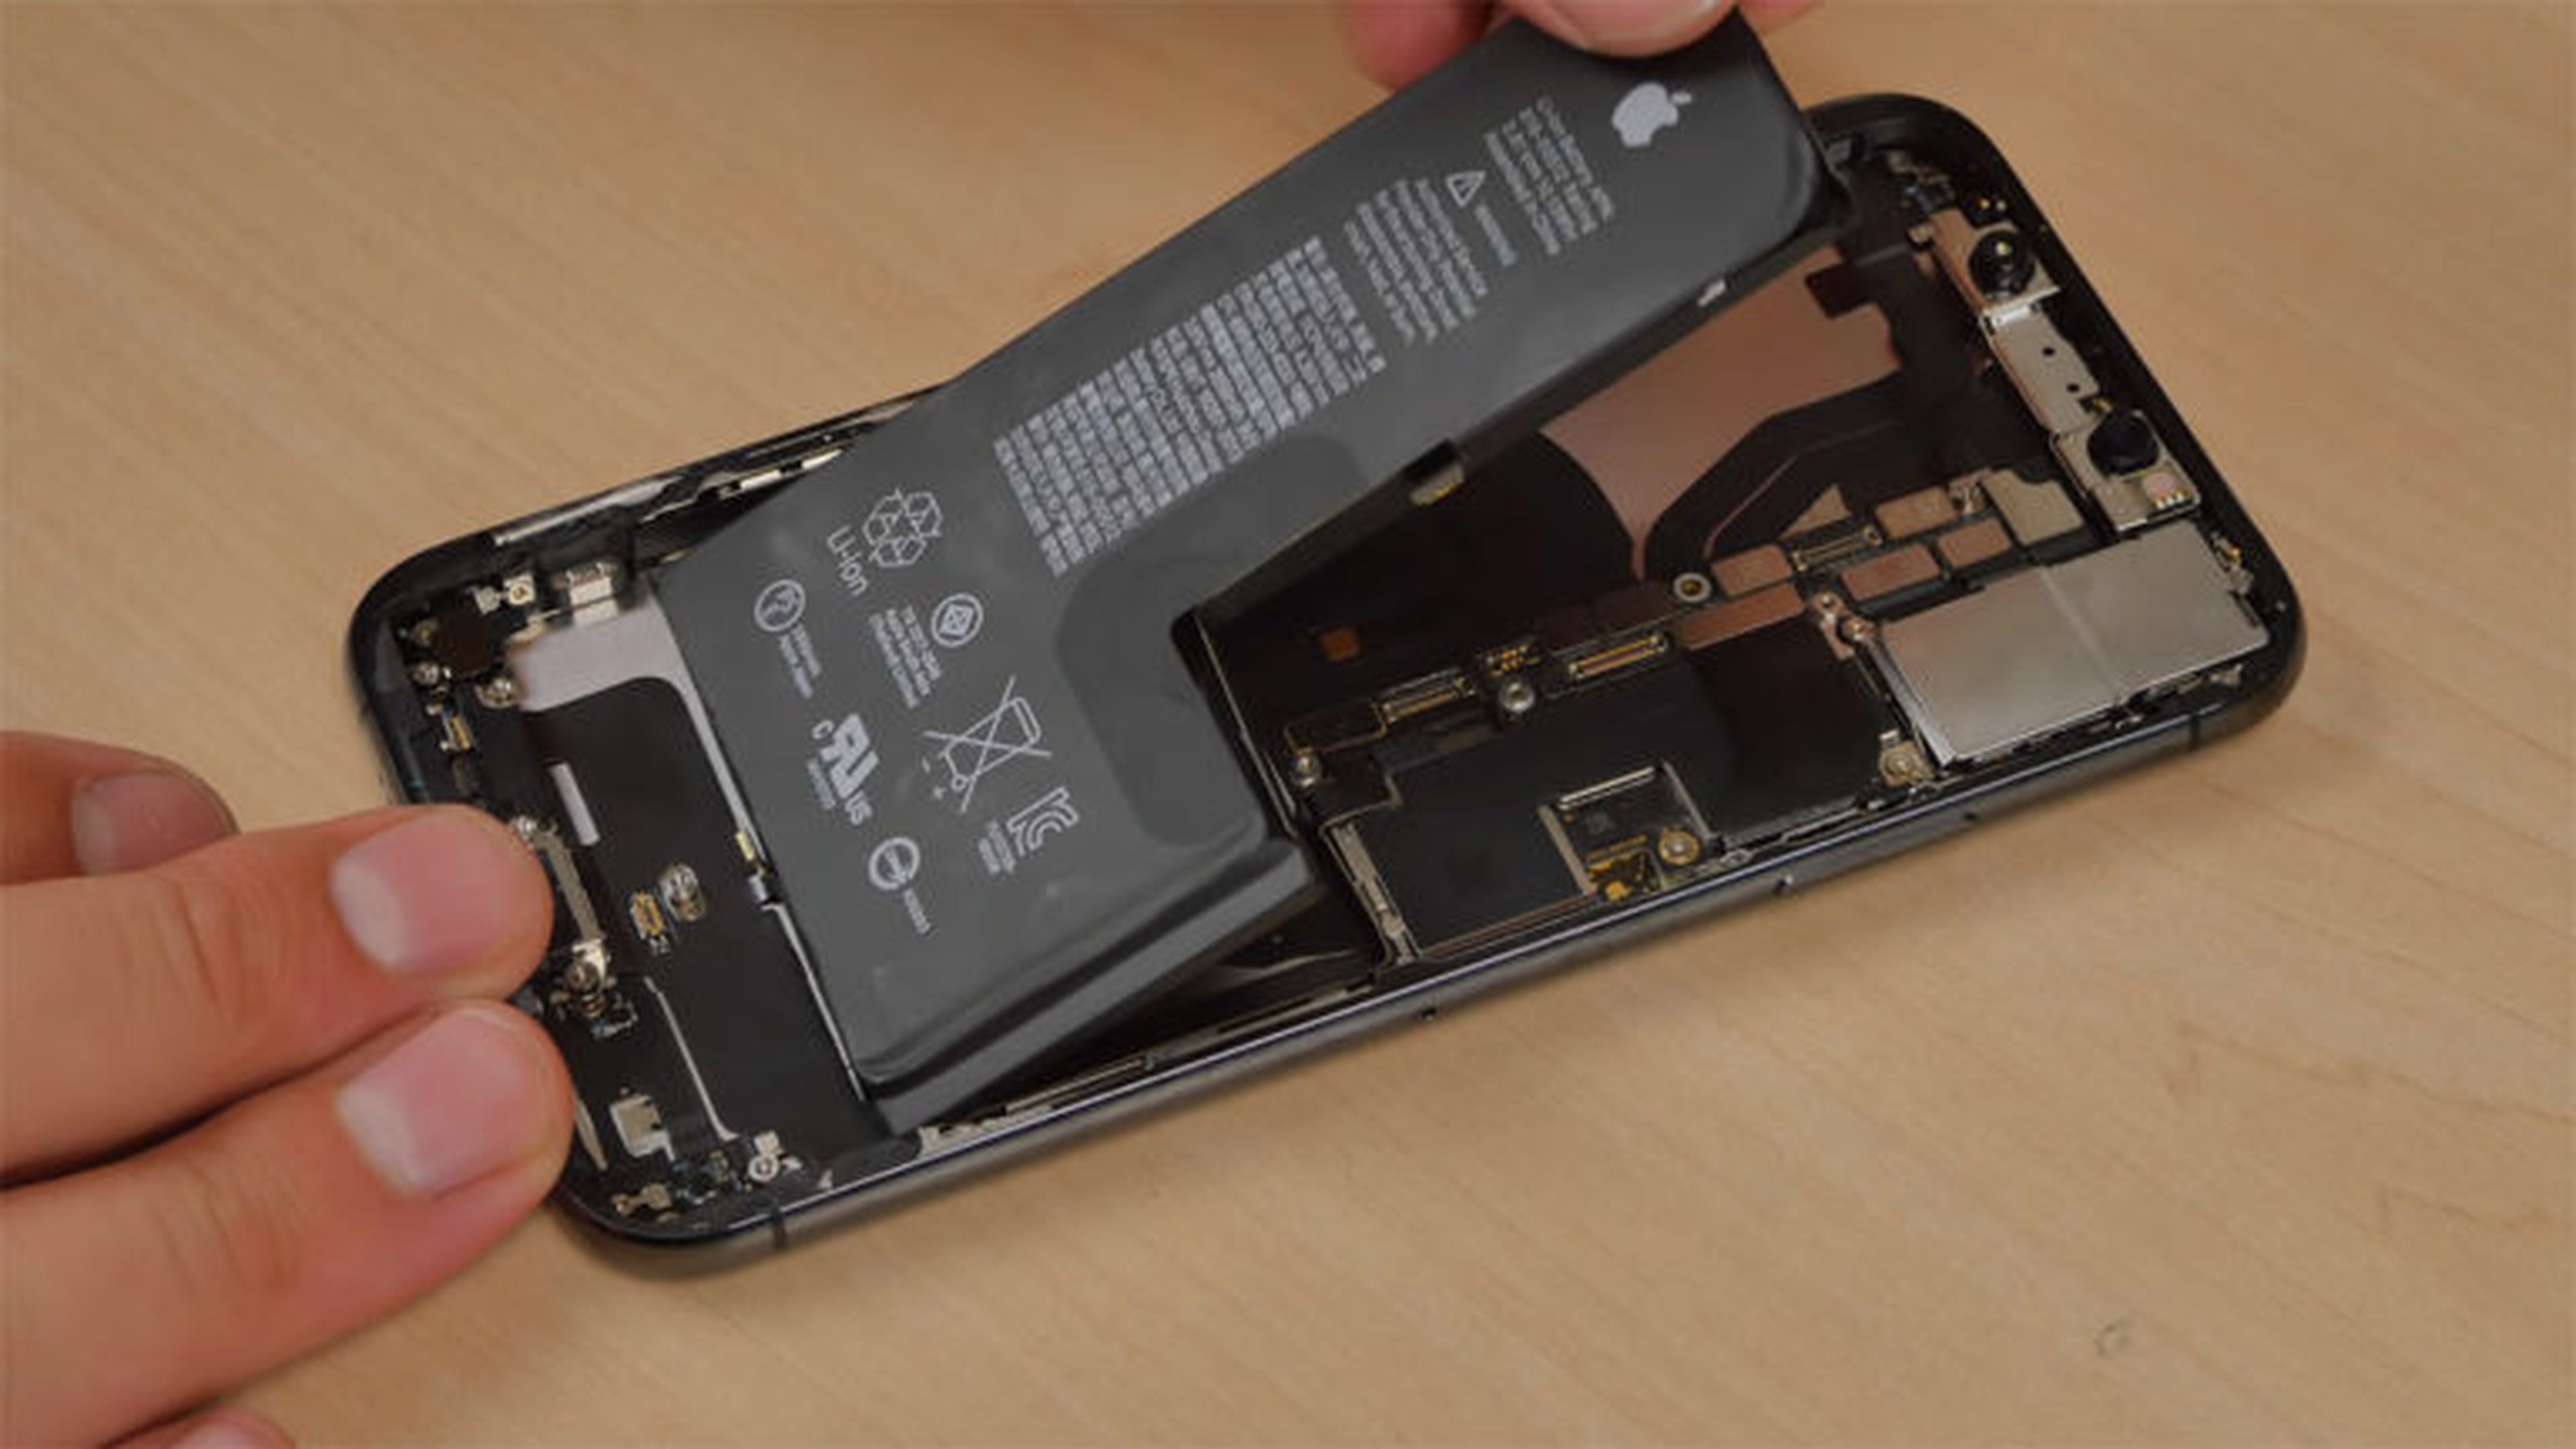 Disposición de la batería y la placa del iPhone Xs.